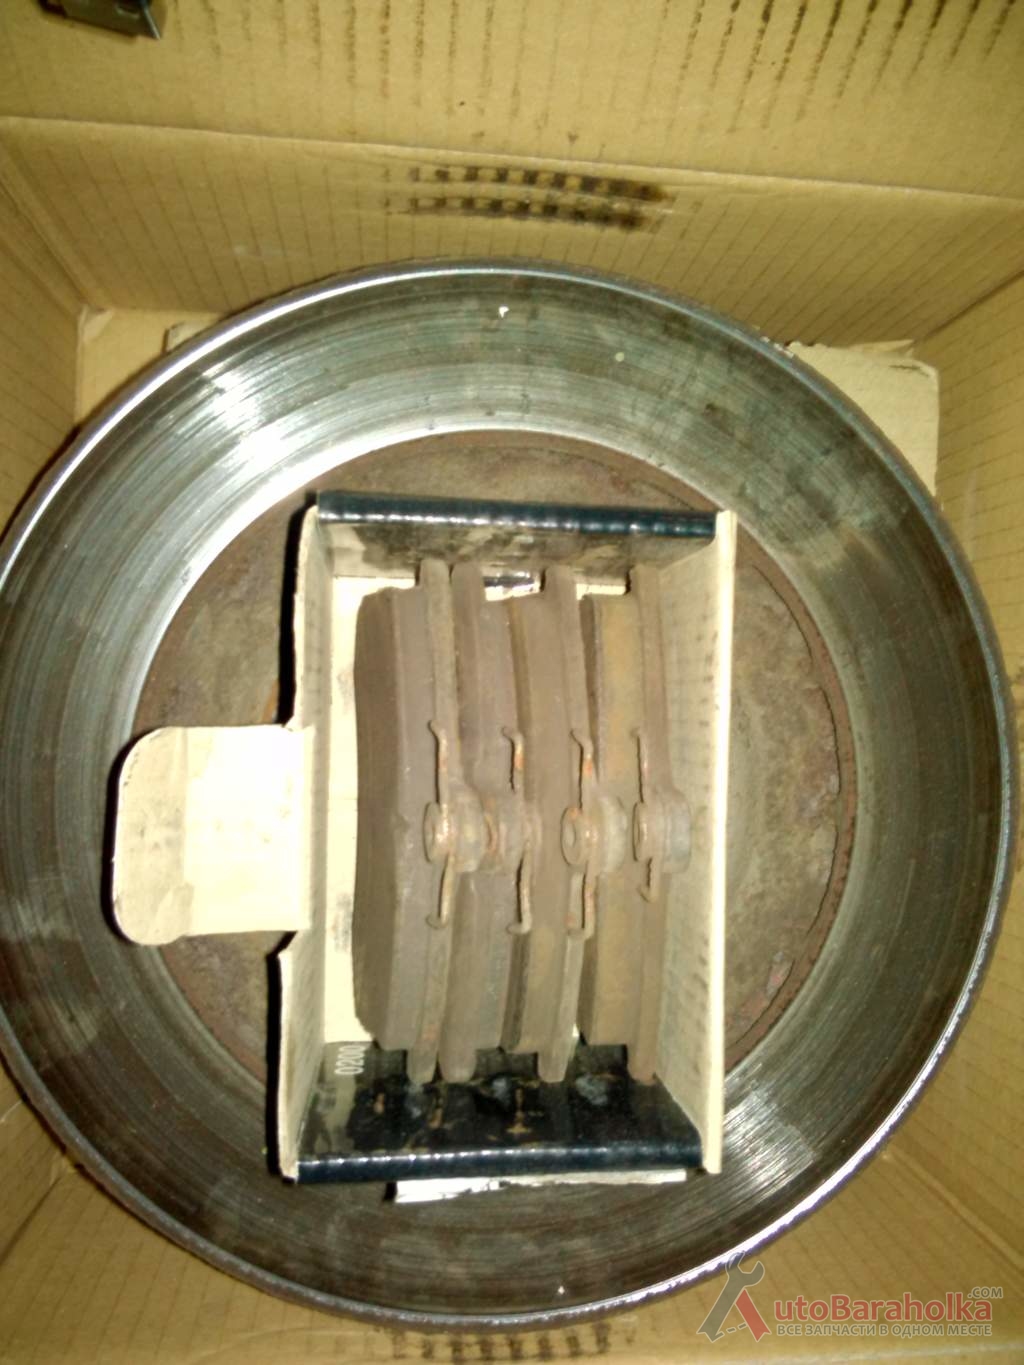 Продам Тормозные диски Д-240 мм на ВАЗ "Калину" с колодками Гордище